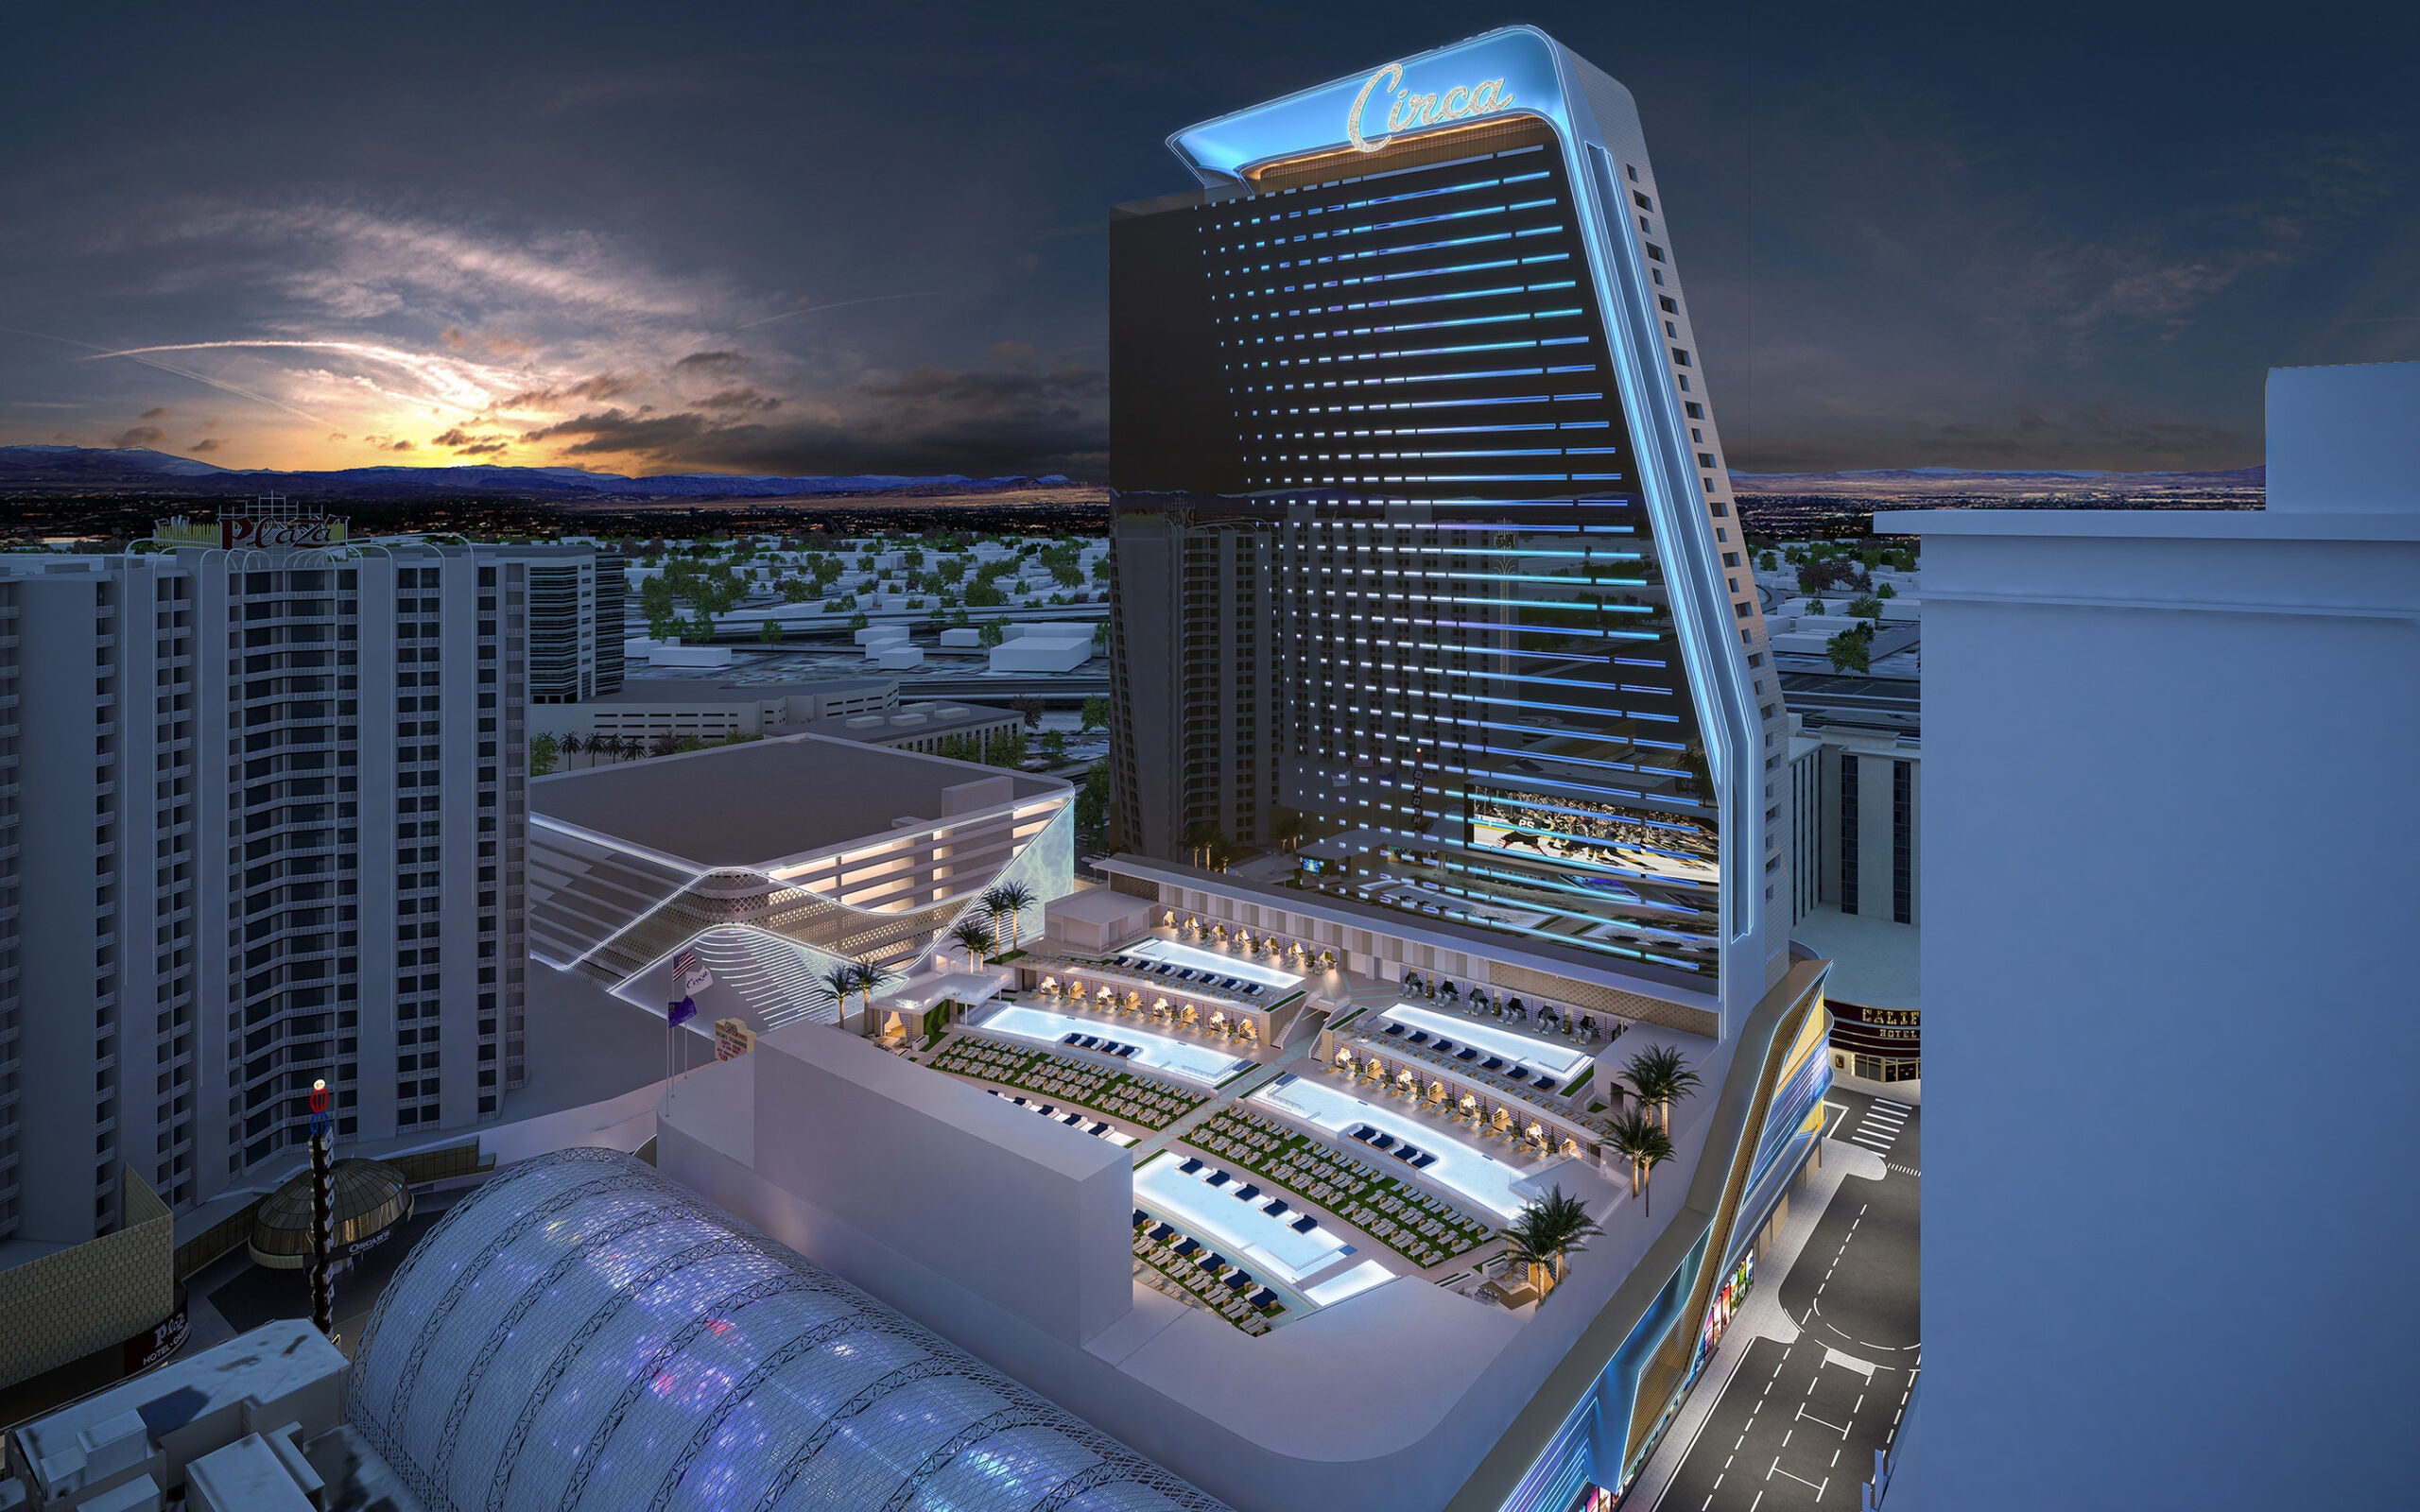 This Is Vegas Casino